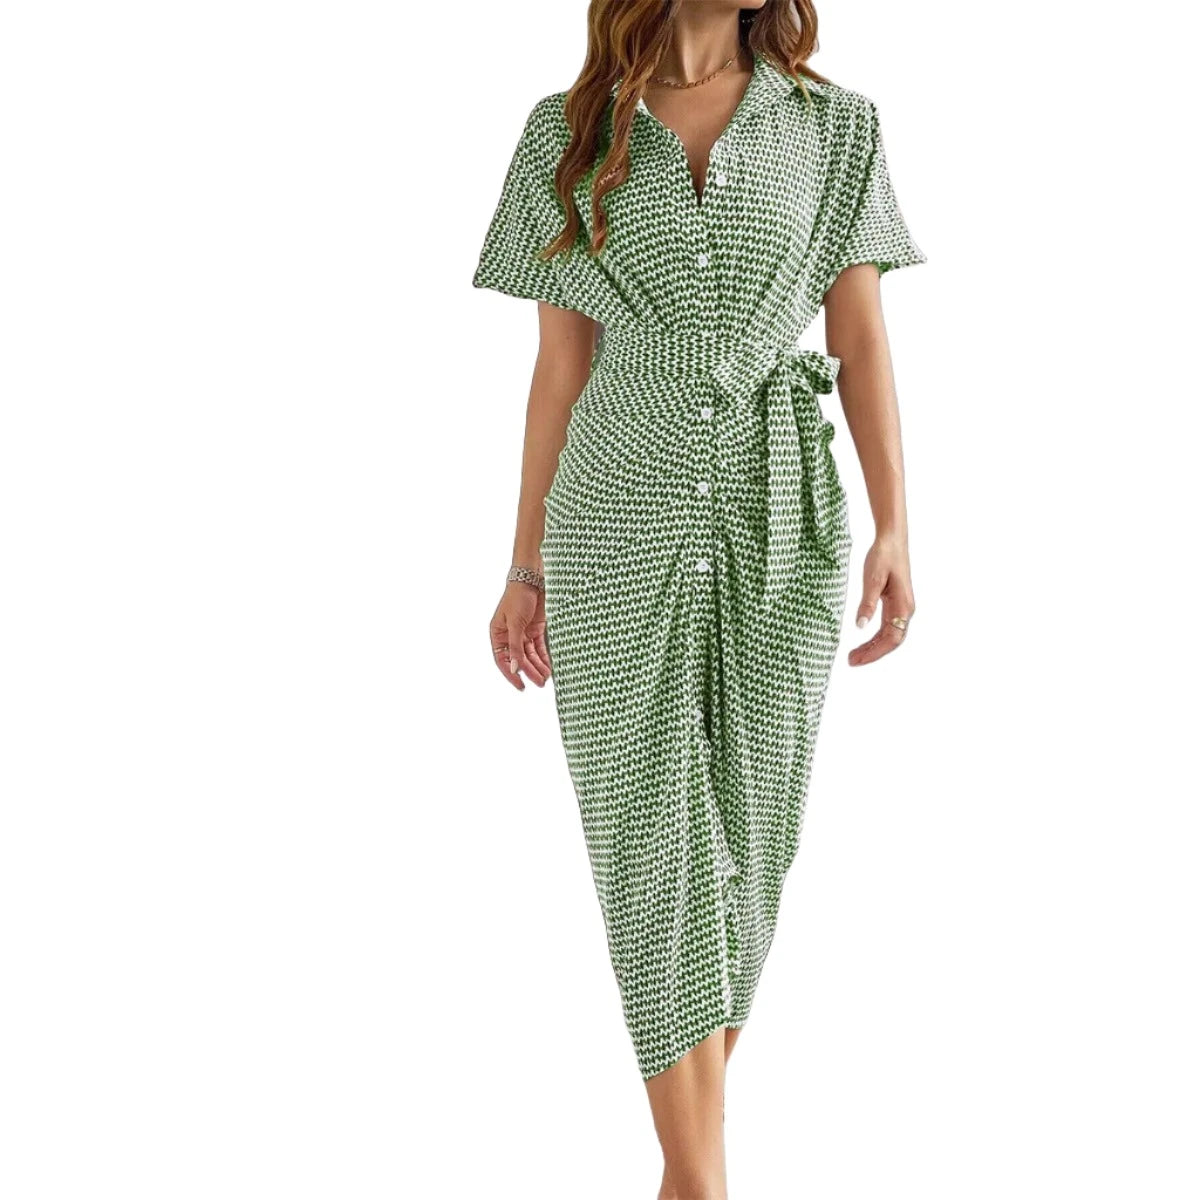 Short-sleeved striped summer Dress with buttons VestiVogue Green XL